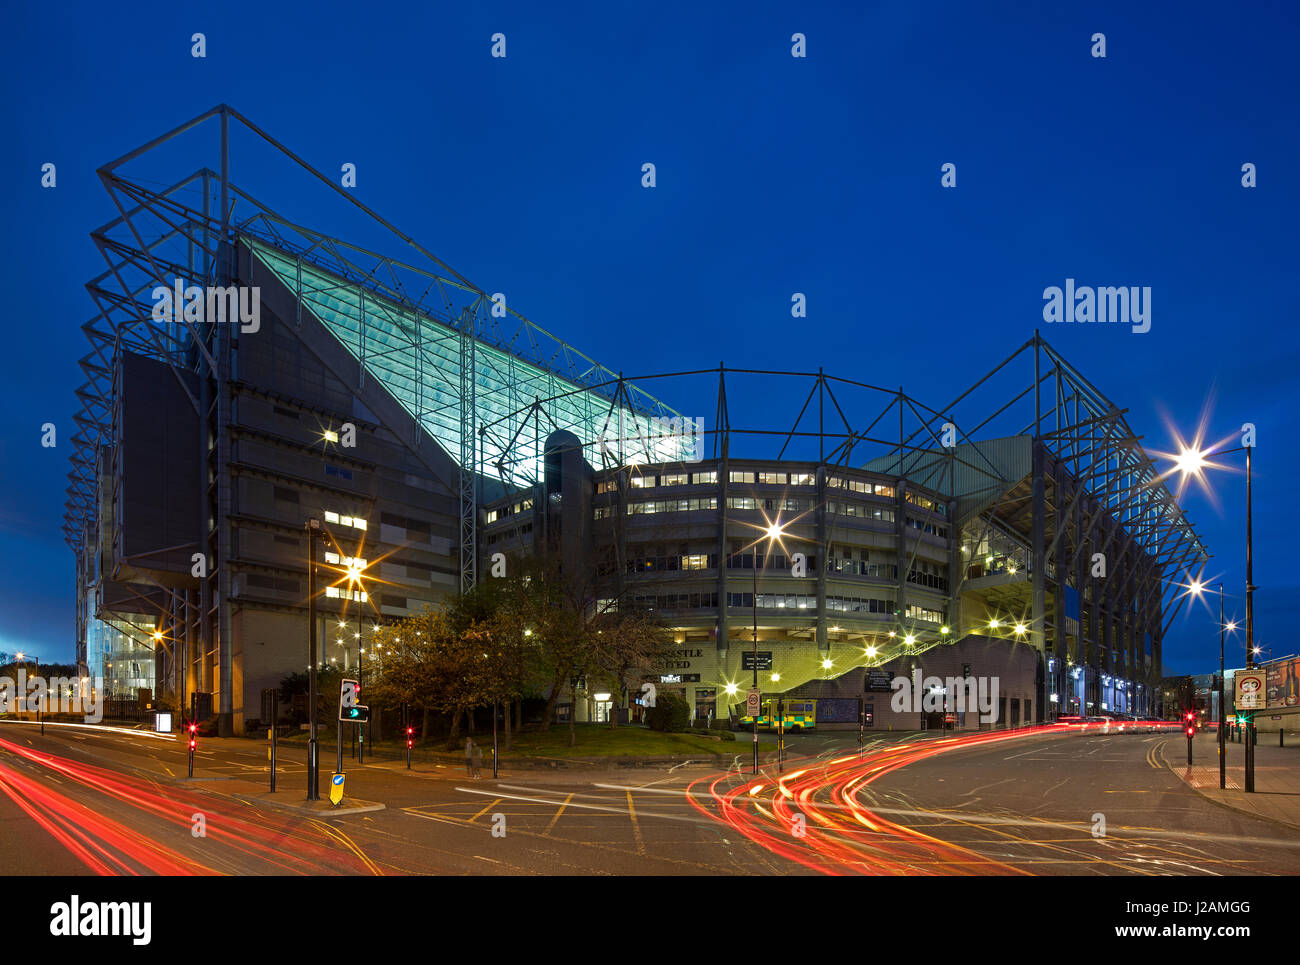 Eine Außenansicht bei Night of St James' Park Fußball Stadion, Newcastle Upon Tyne, England, Vereinigtes Königreich Stockfoto